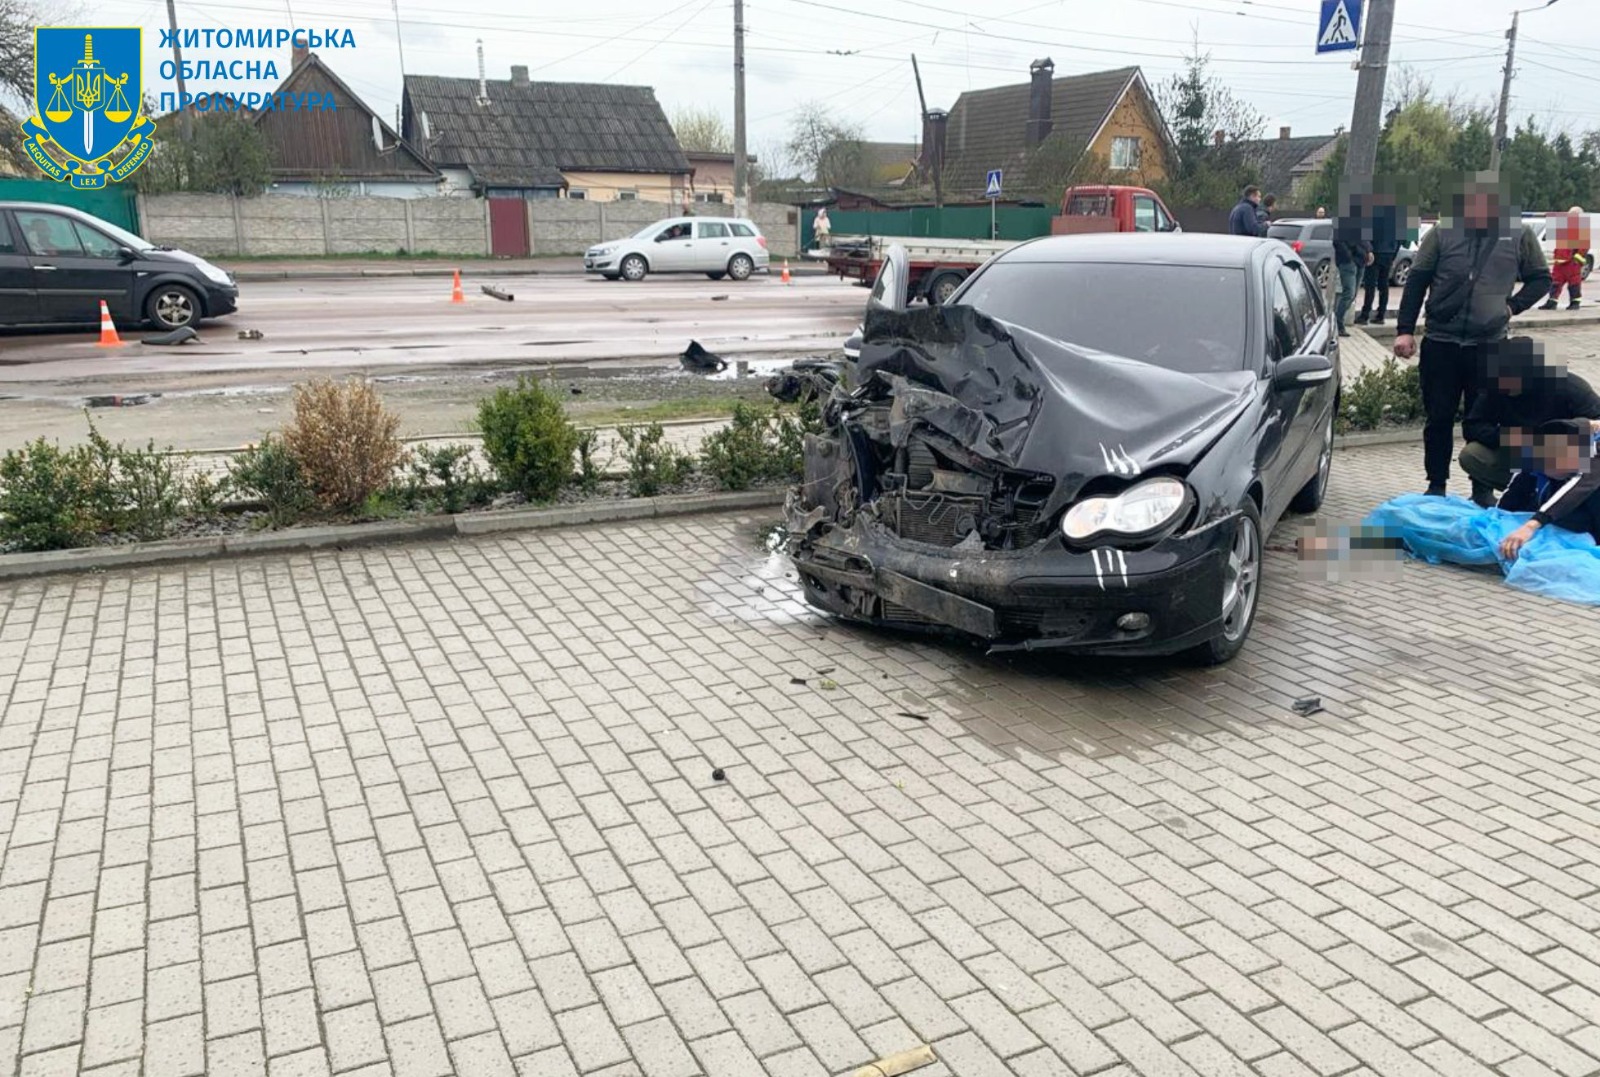 Повідомлено про підозру водію, який у нетверезому стані скоїв смертельну ДТП у Житомирі